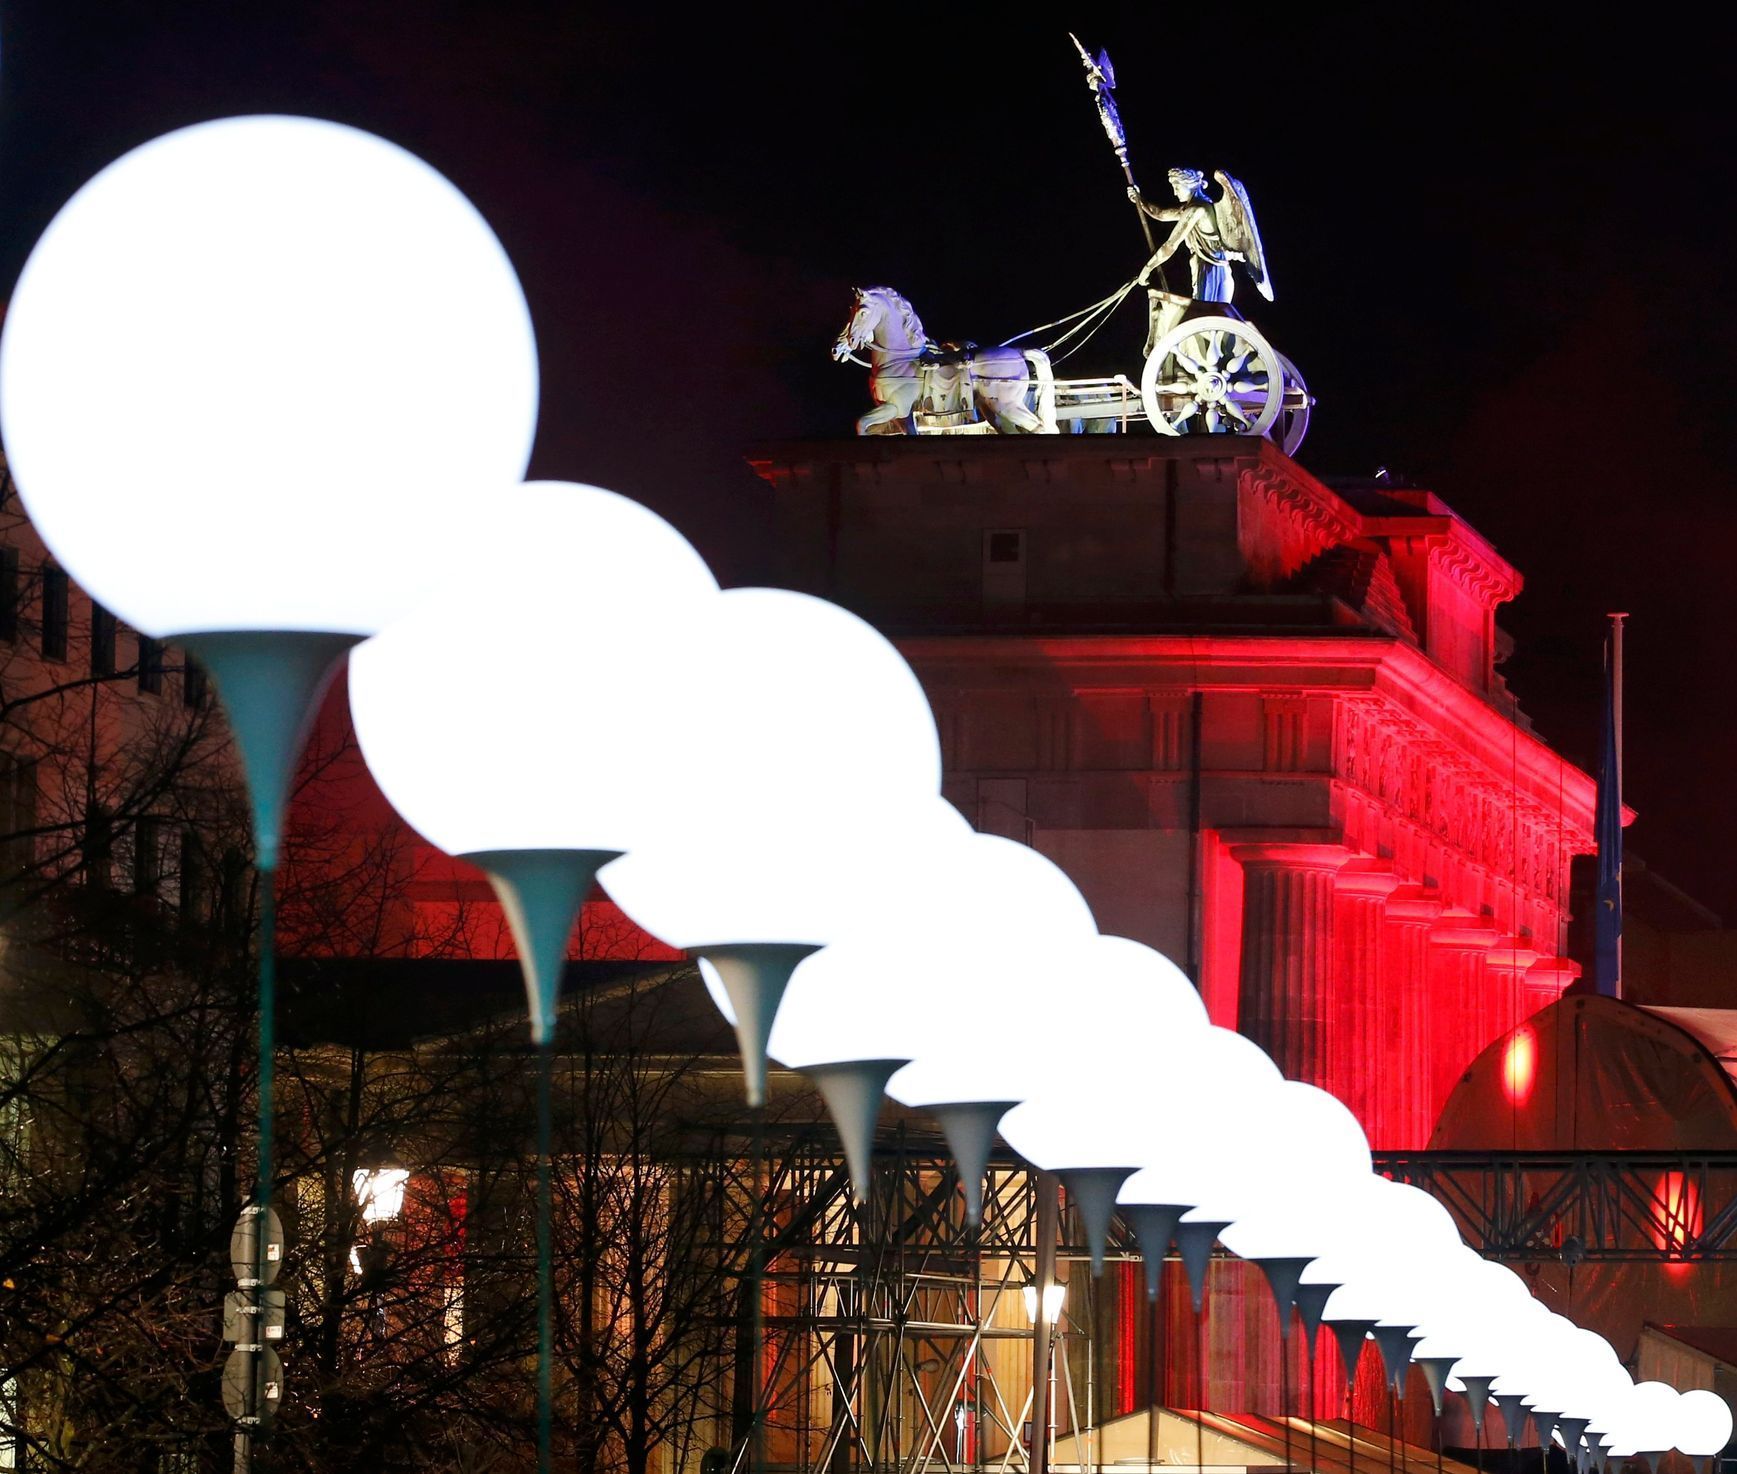 Berlín slaví 25 let od pádu Berlínské zdí